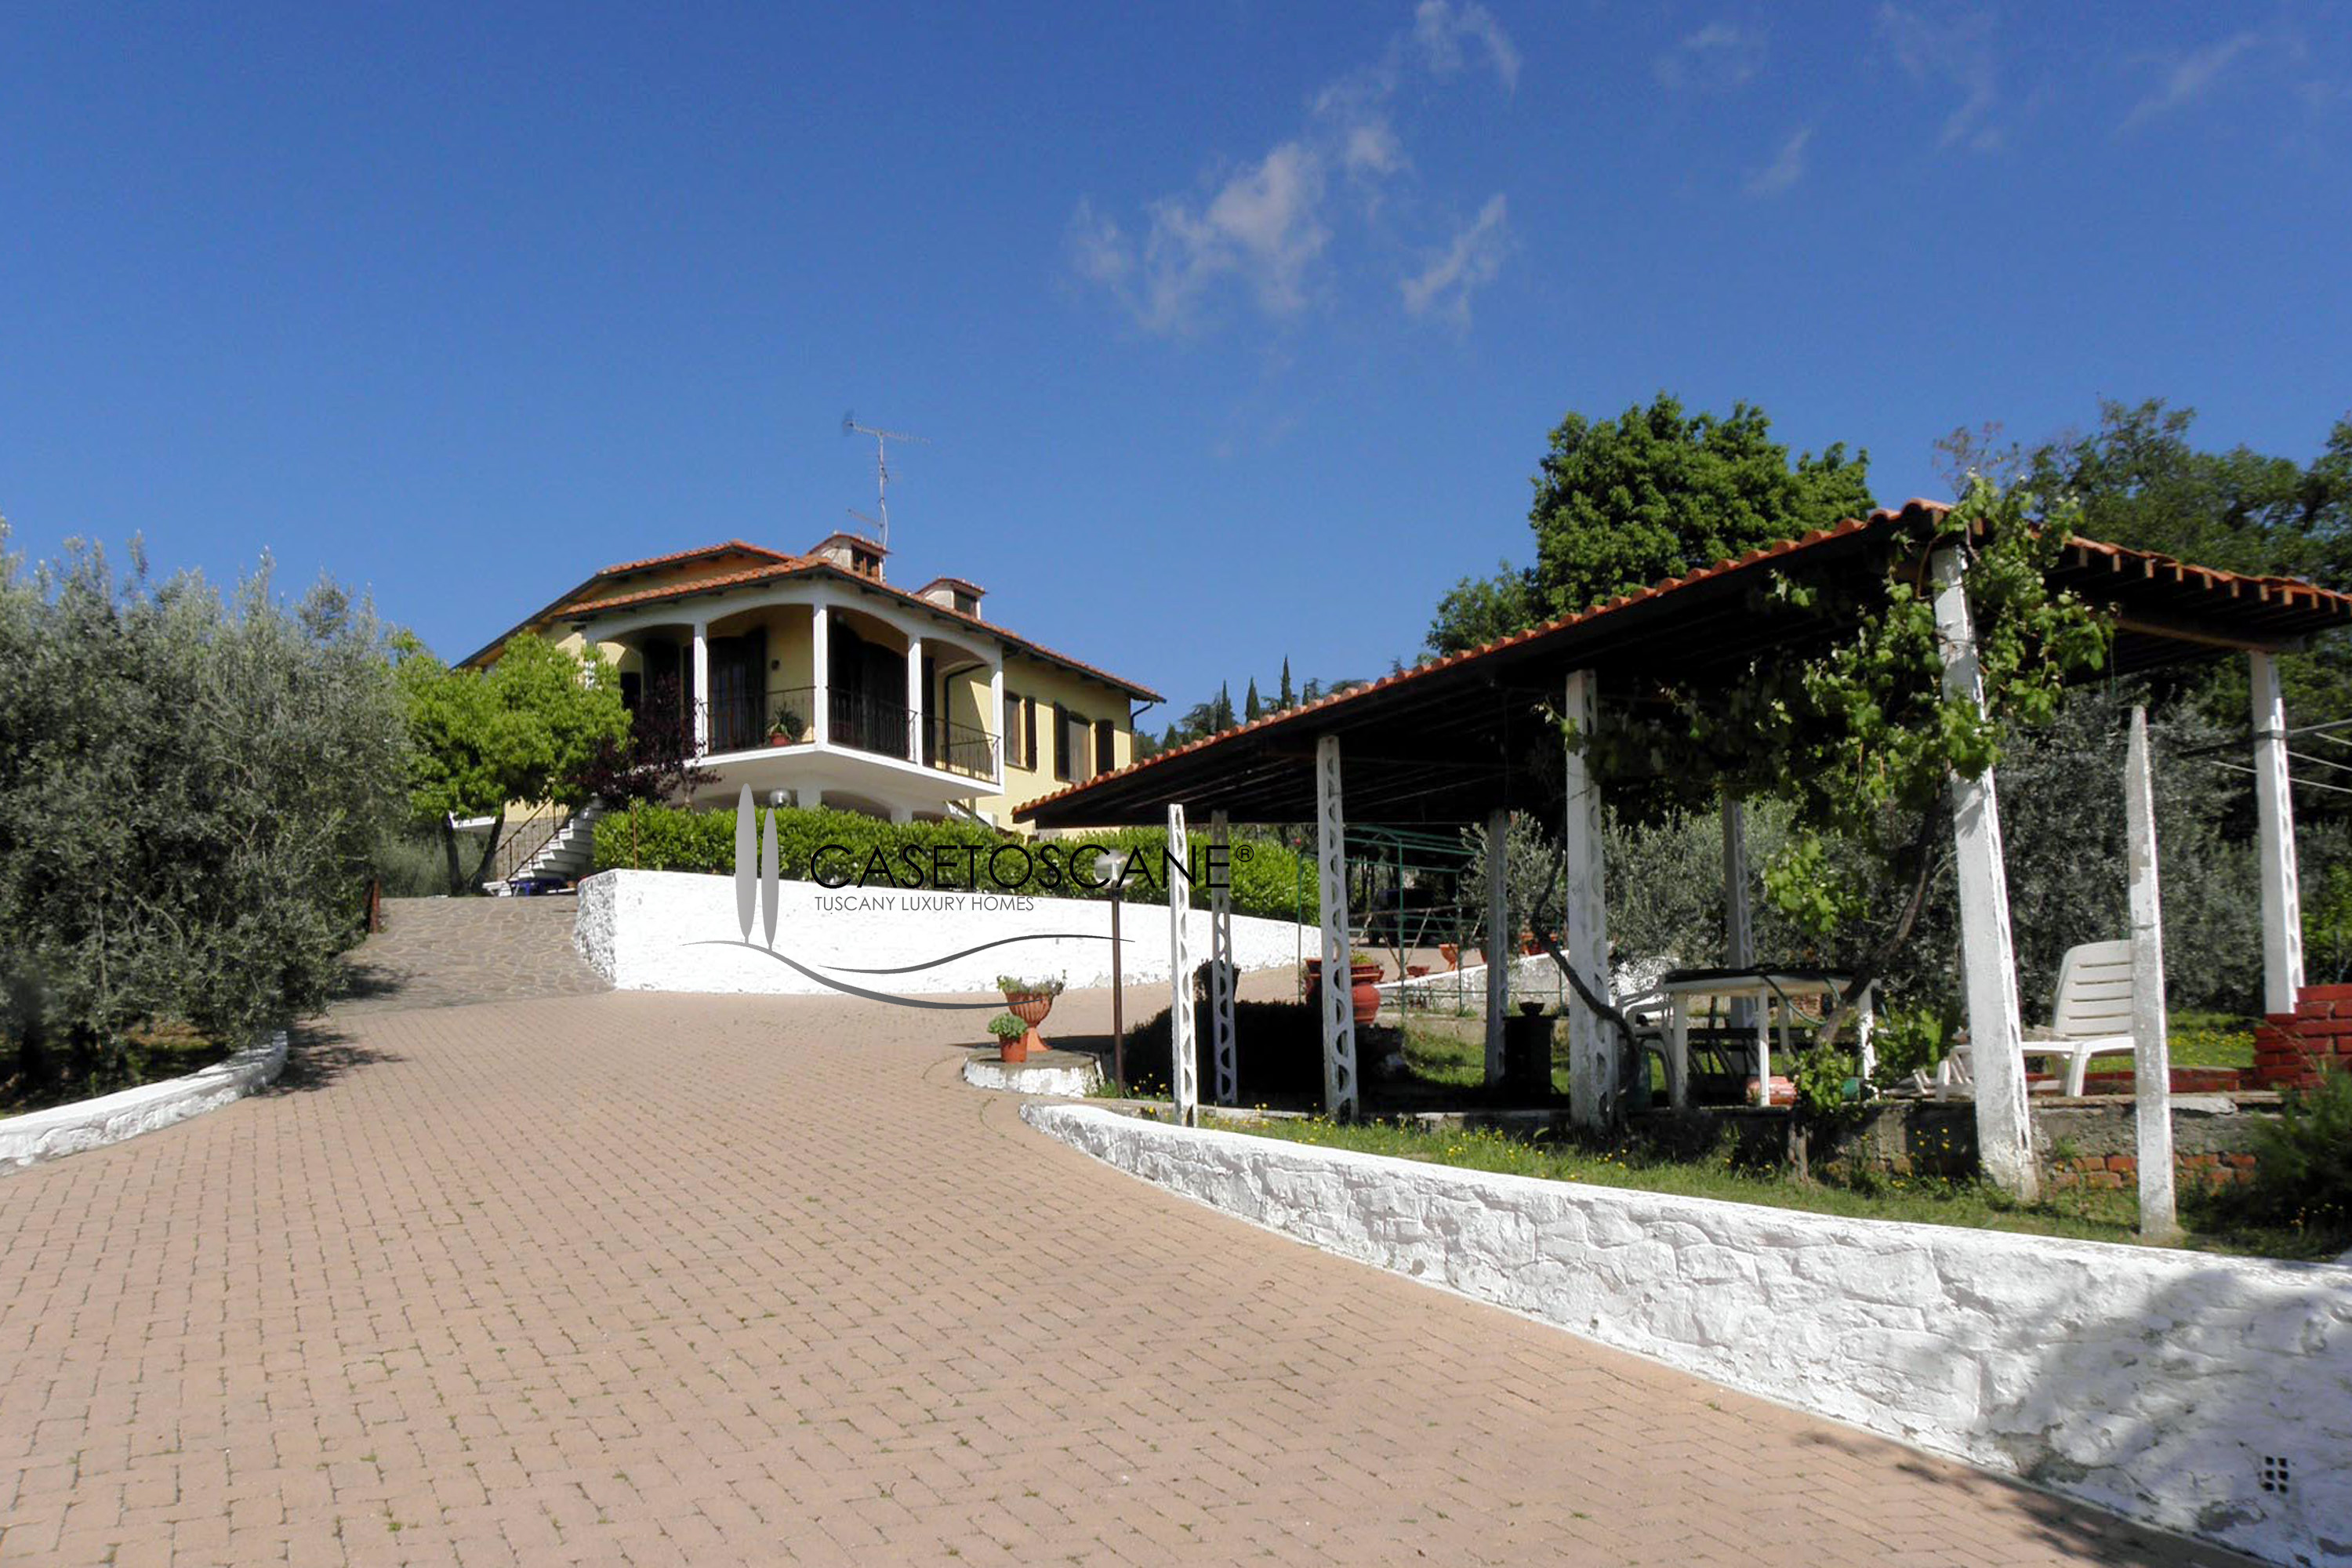 S146 - Villa indipendente di mq.400 con parco di mq.8.000 nelle colline di Viciomaggio (AR) con magnifico panorama.